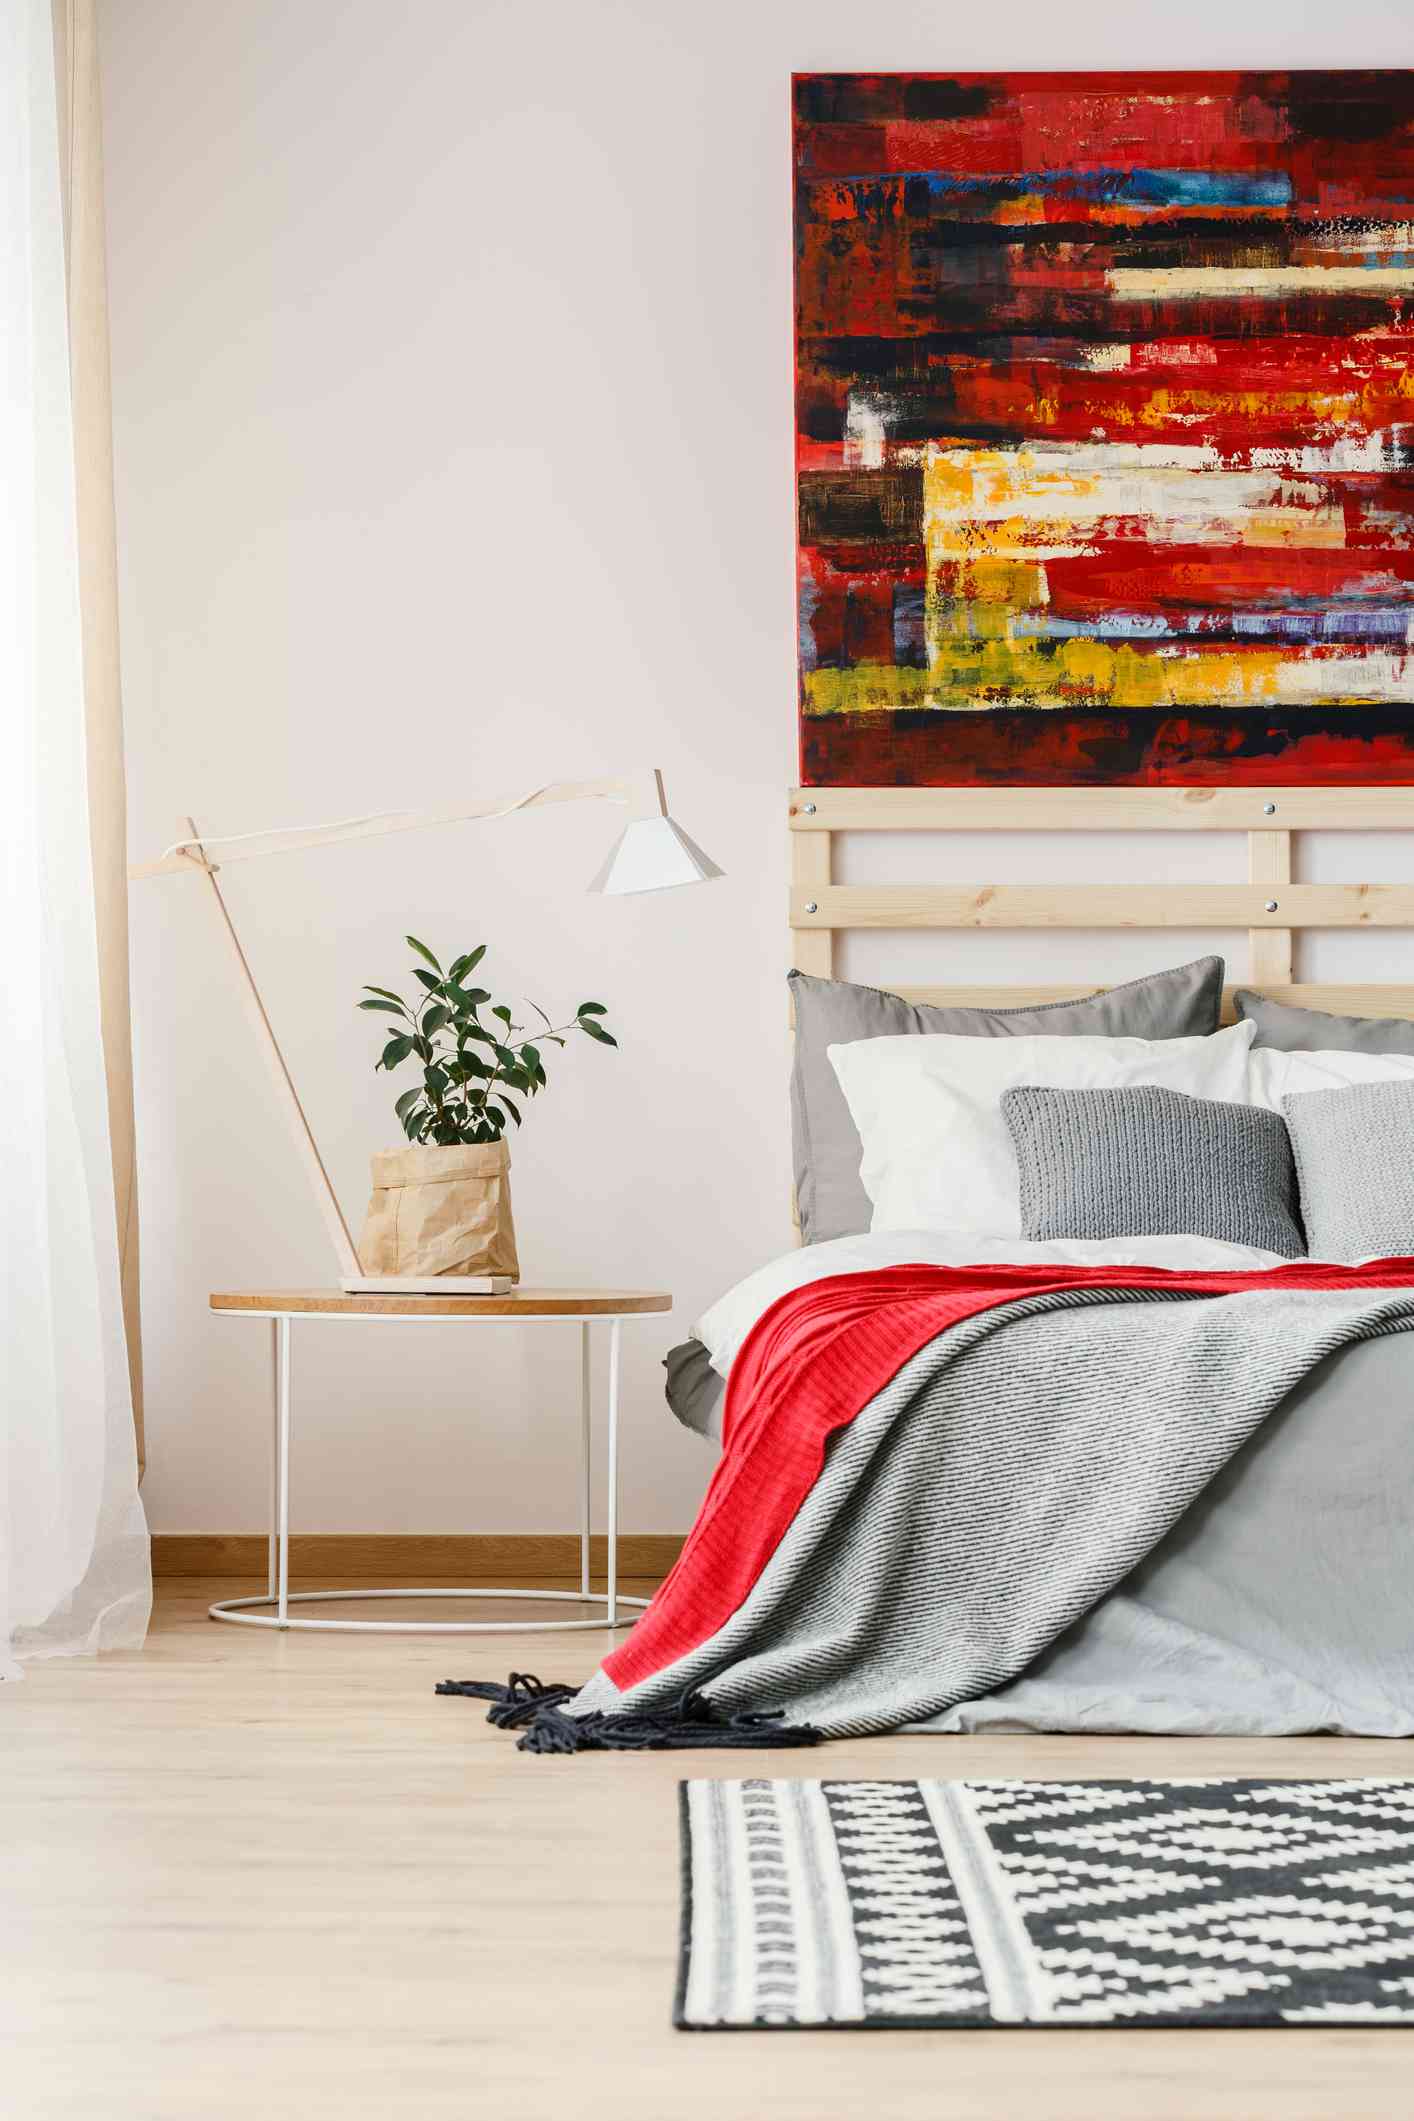 Manta gris y roja sobre cama junto a mesa con lámpara y planta en interior de dormitorio con cuadro.